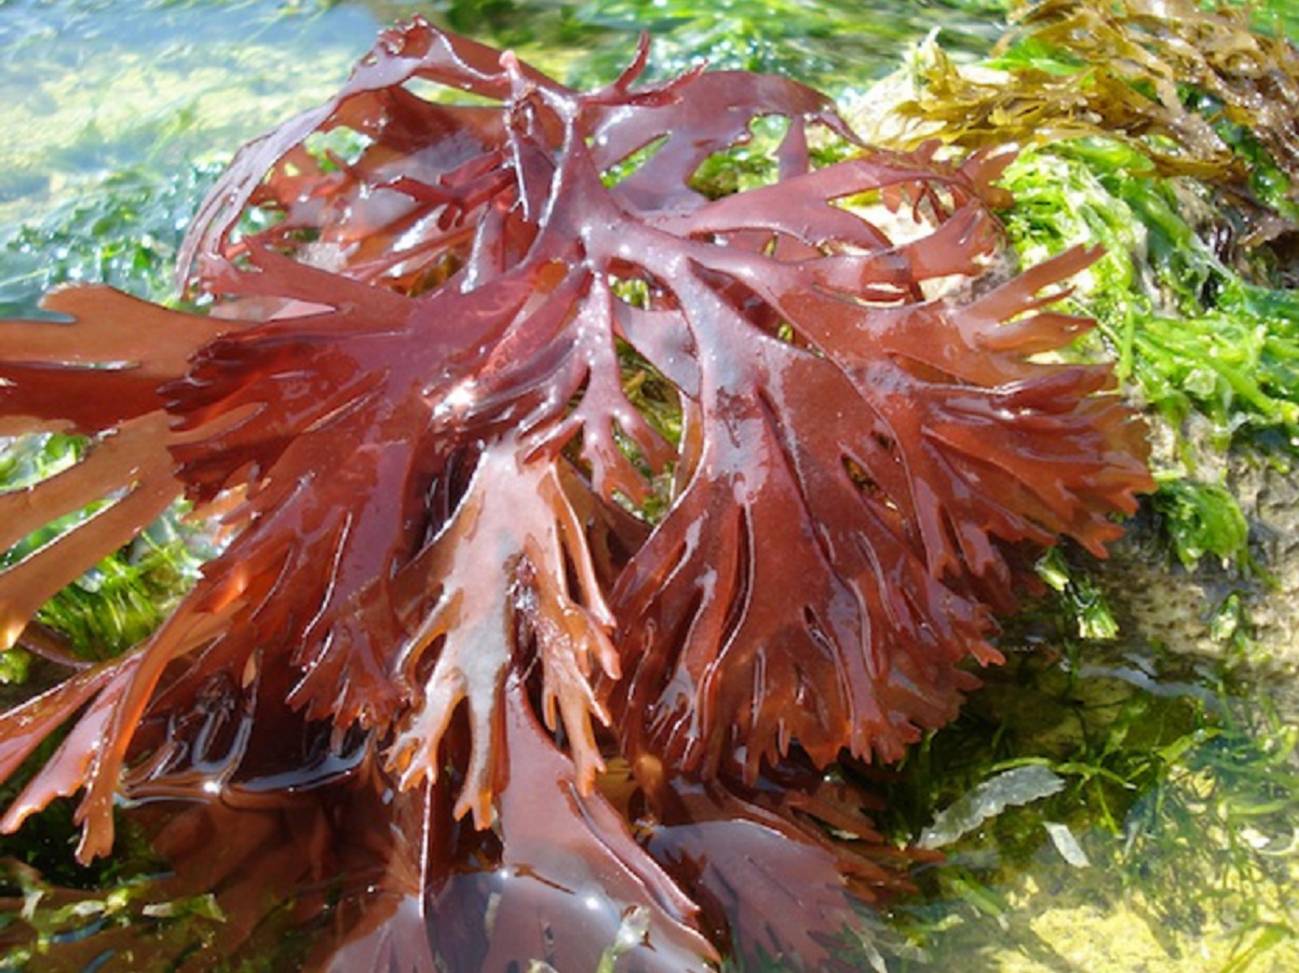 Protectores solares más eficientes y duraderos inspirados en algas marinas